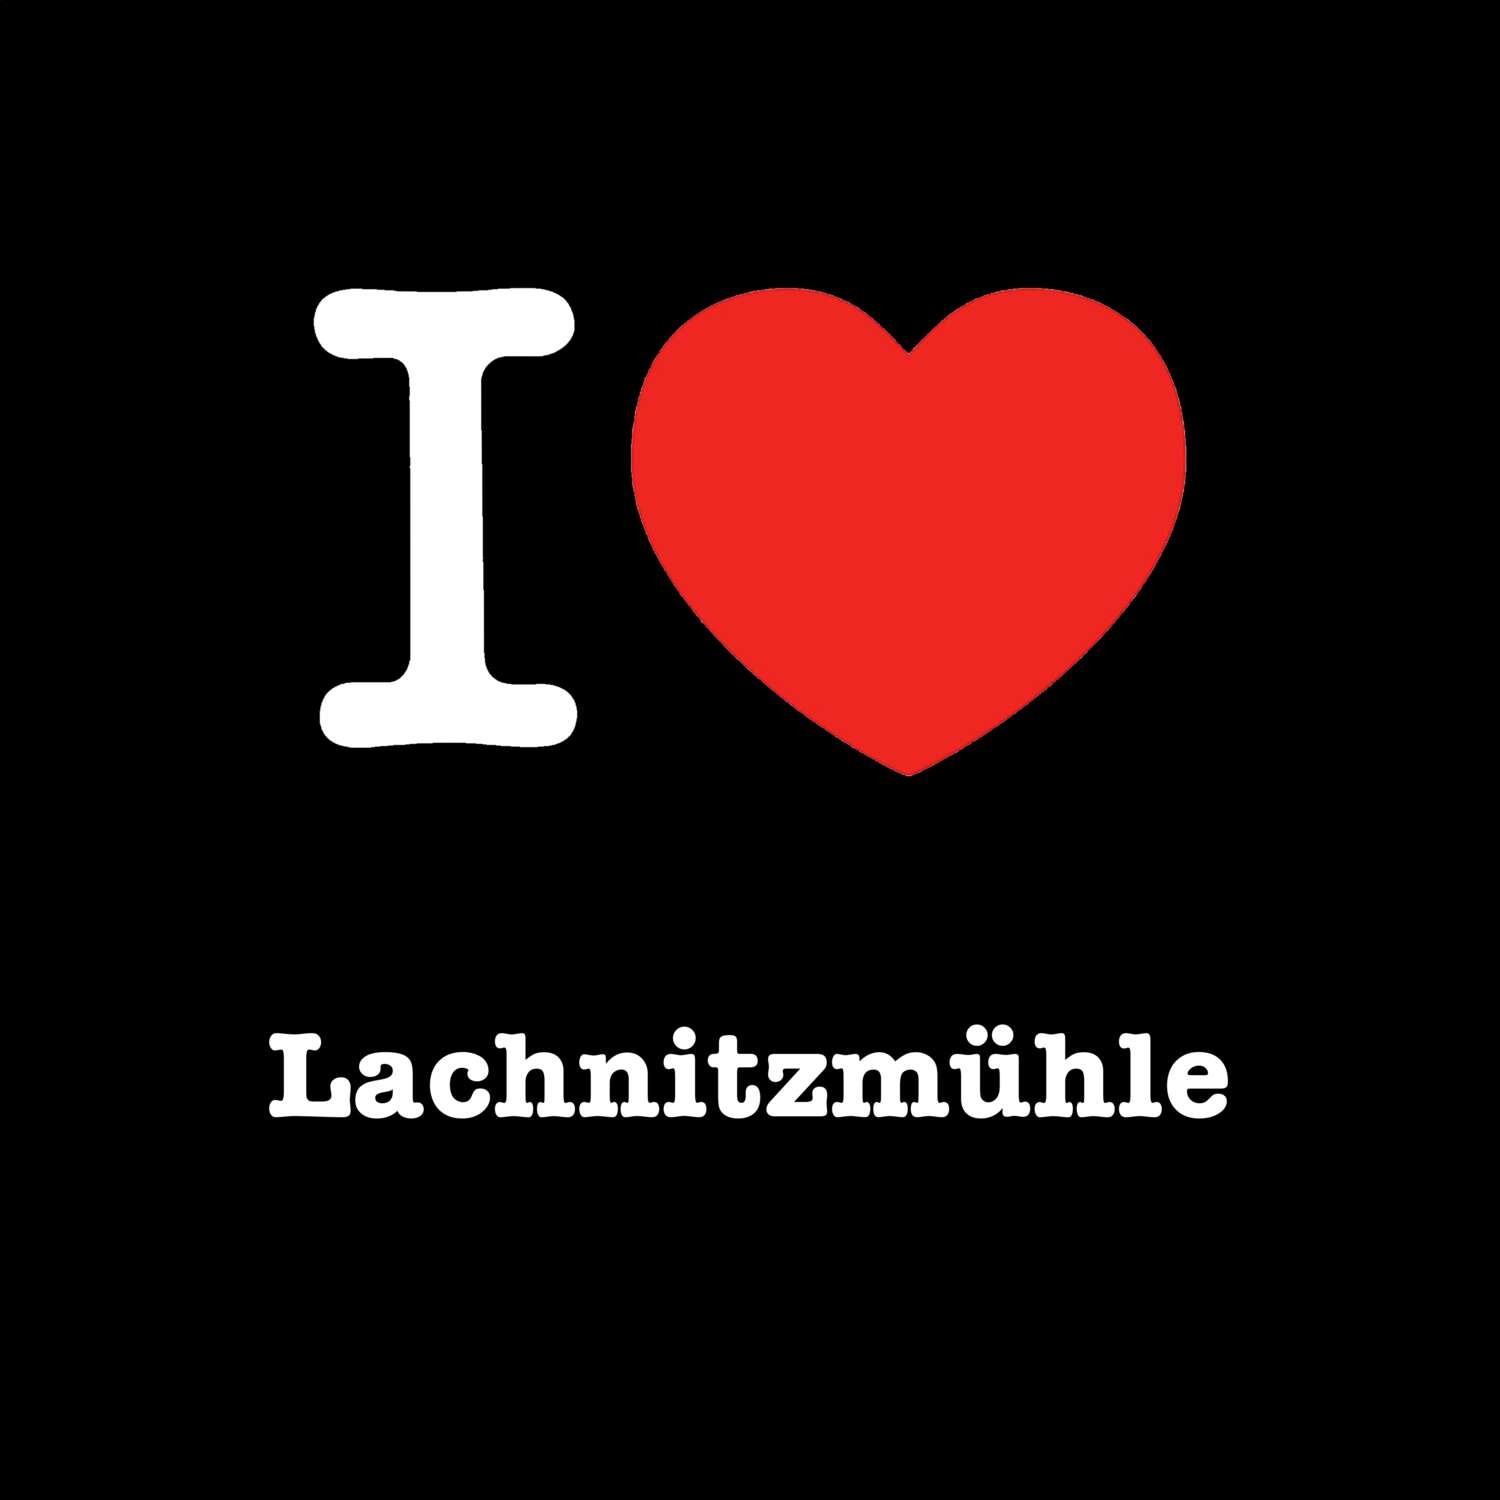 Lachnitzmühle T-Shirt »I love«